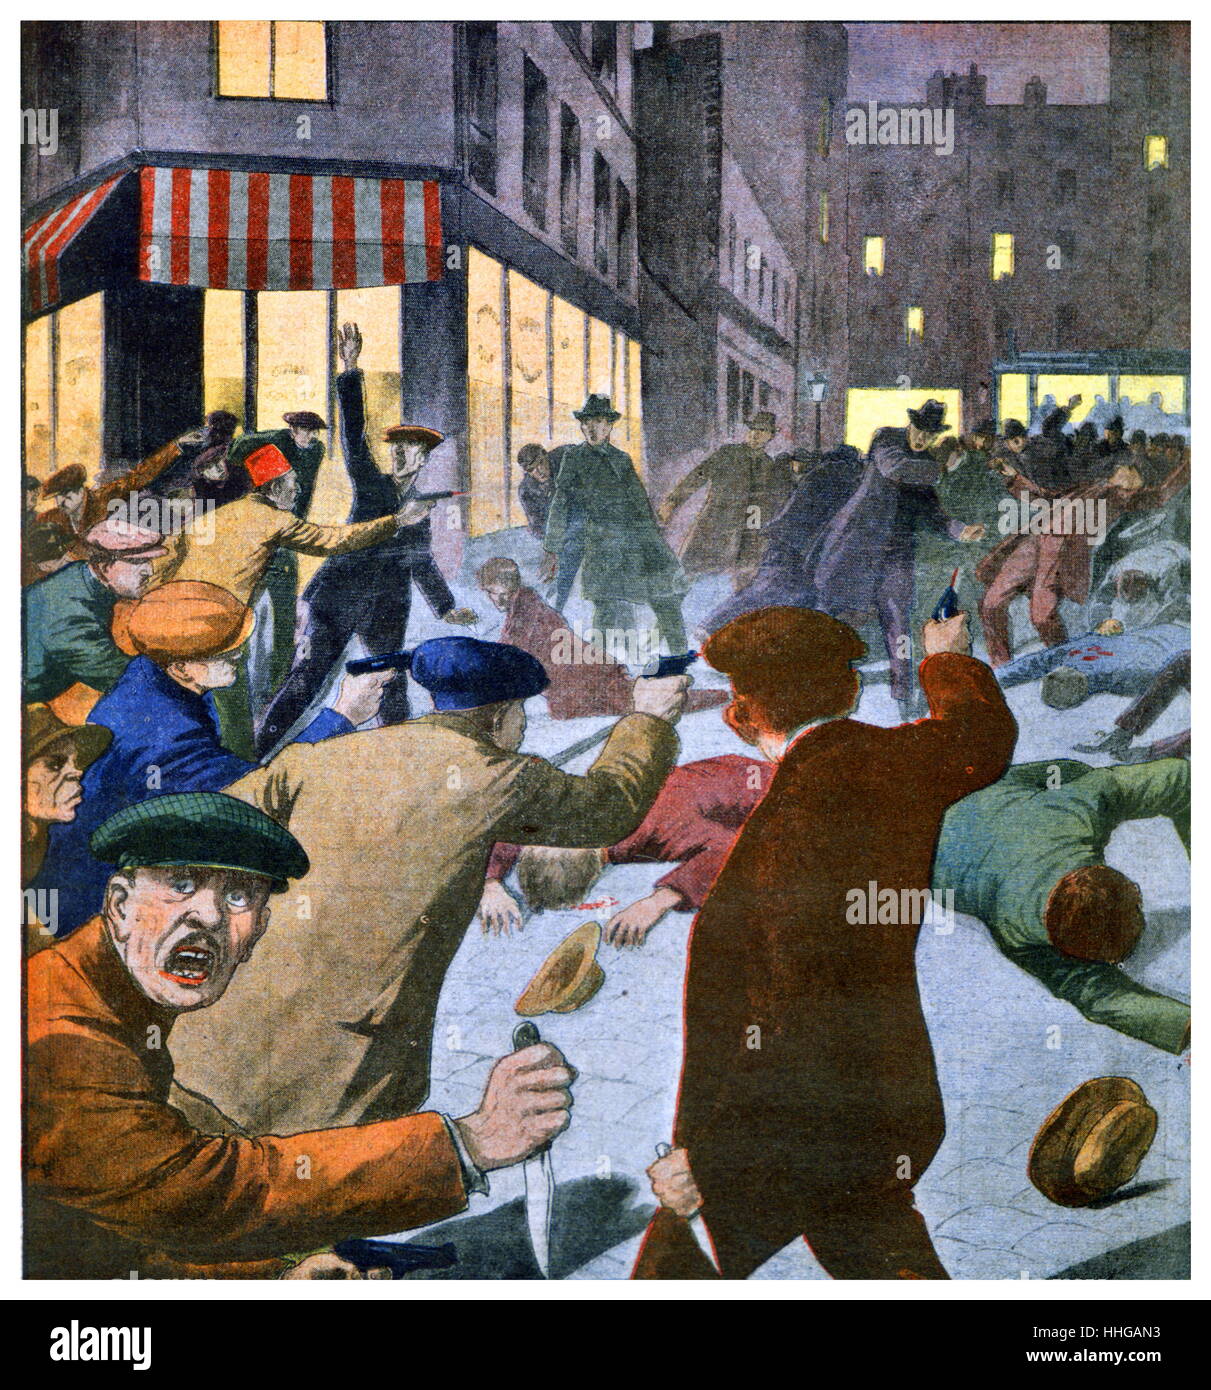 Armati anti-comunista, attacco nella rue Danremont, Parigi, dove un comunista incontro ha avuto luogo. FrontPage del quotidiano francese "Le Petit Journal' Maggio 1925 Foto Stock